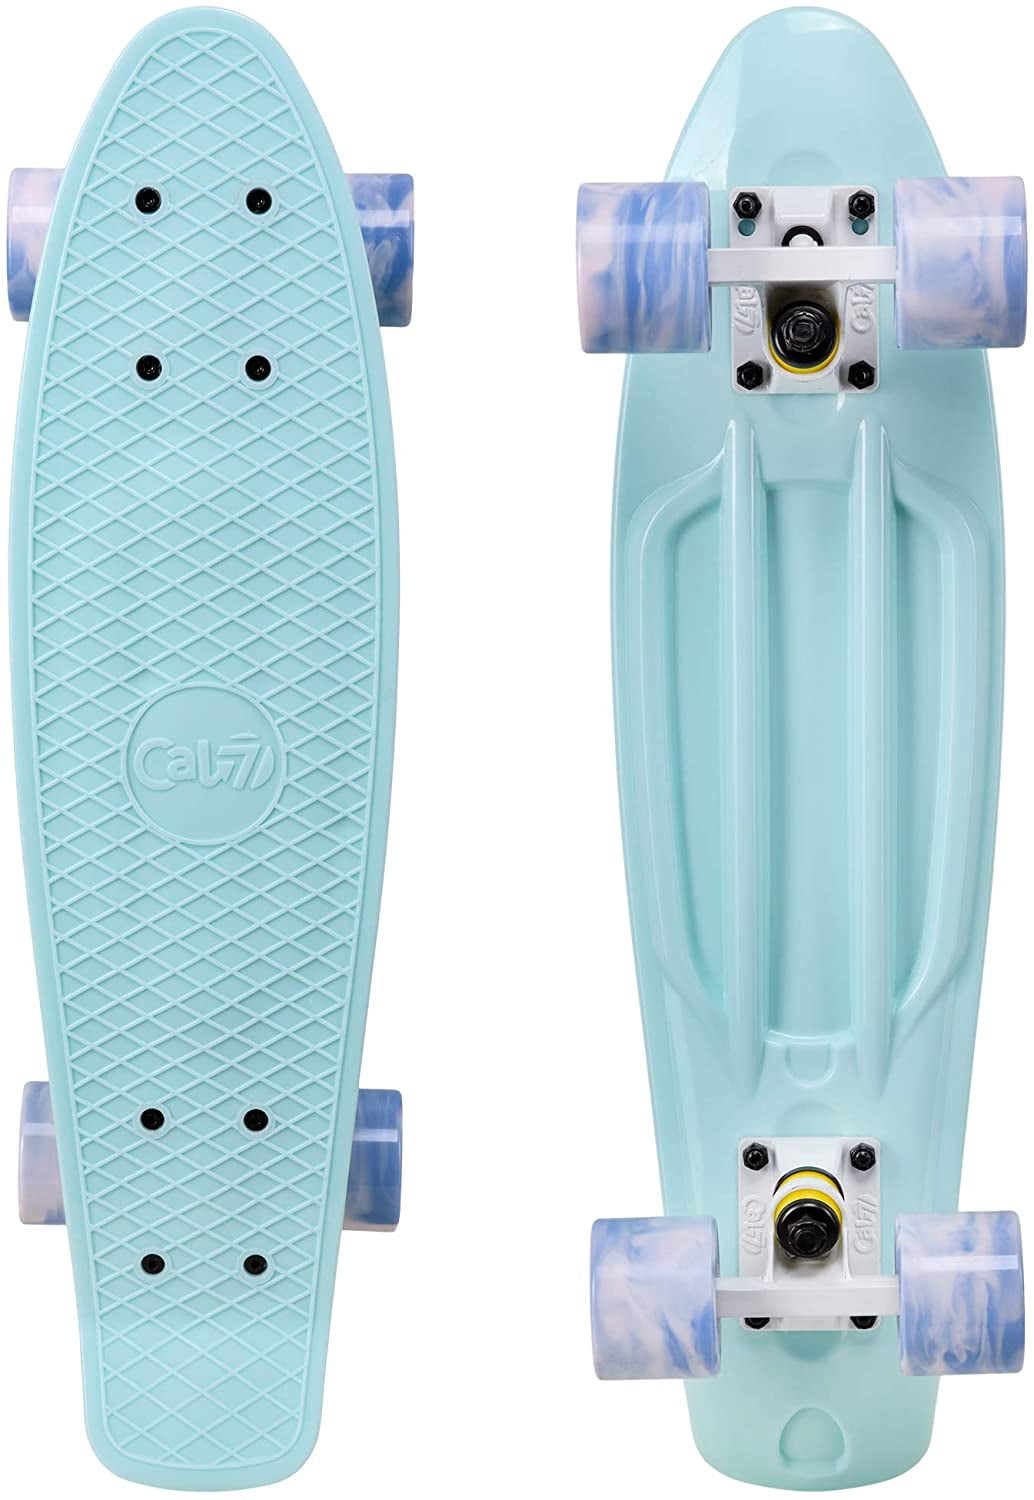 Retro Plastic Complete Skateboard for Boys Xootz Kid's Mini Cruiser Skateboard 